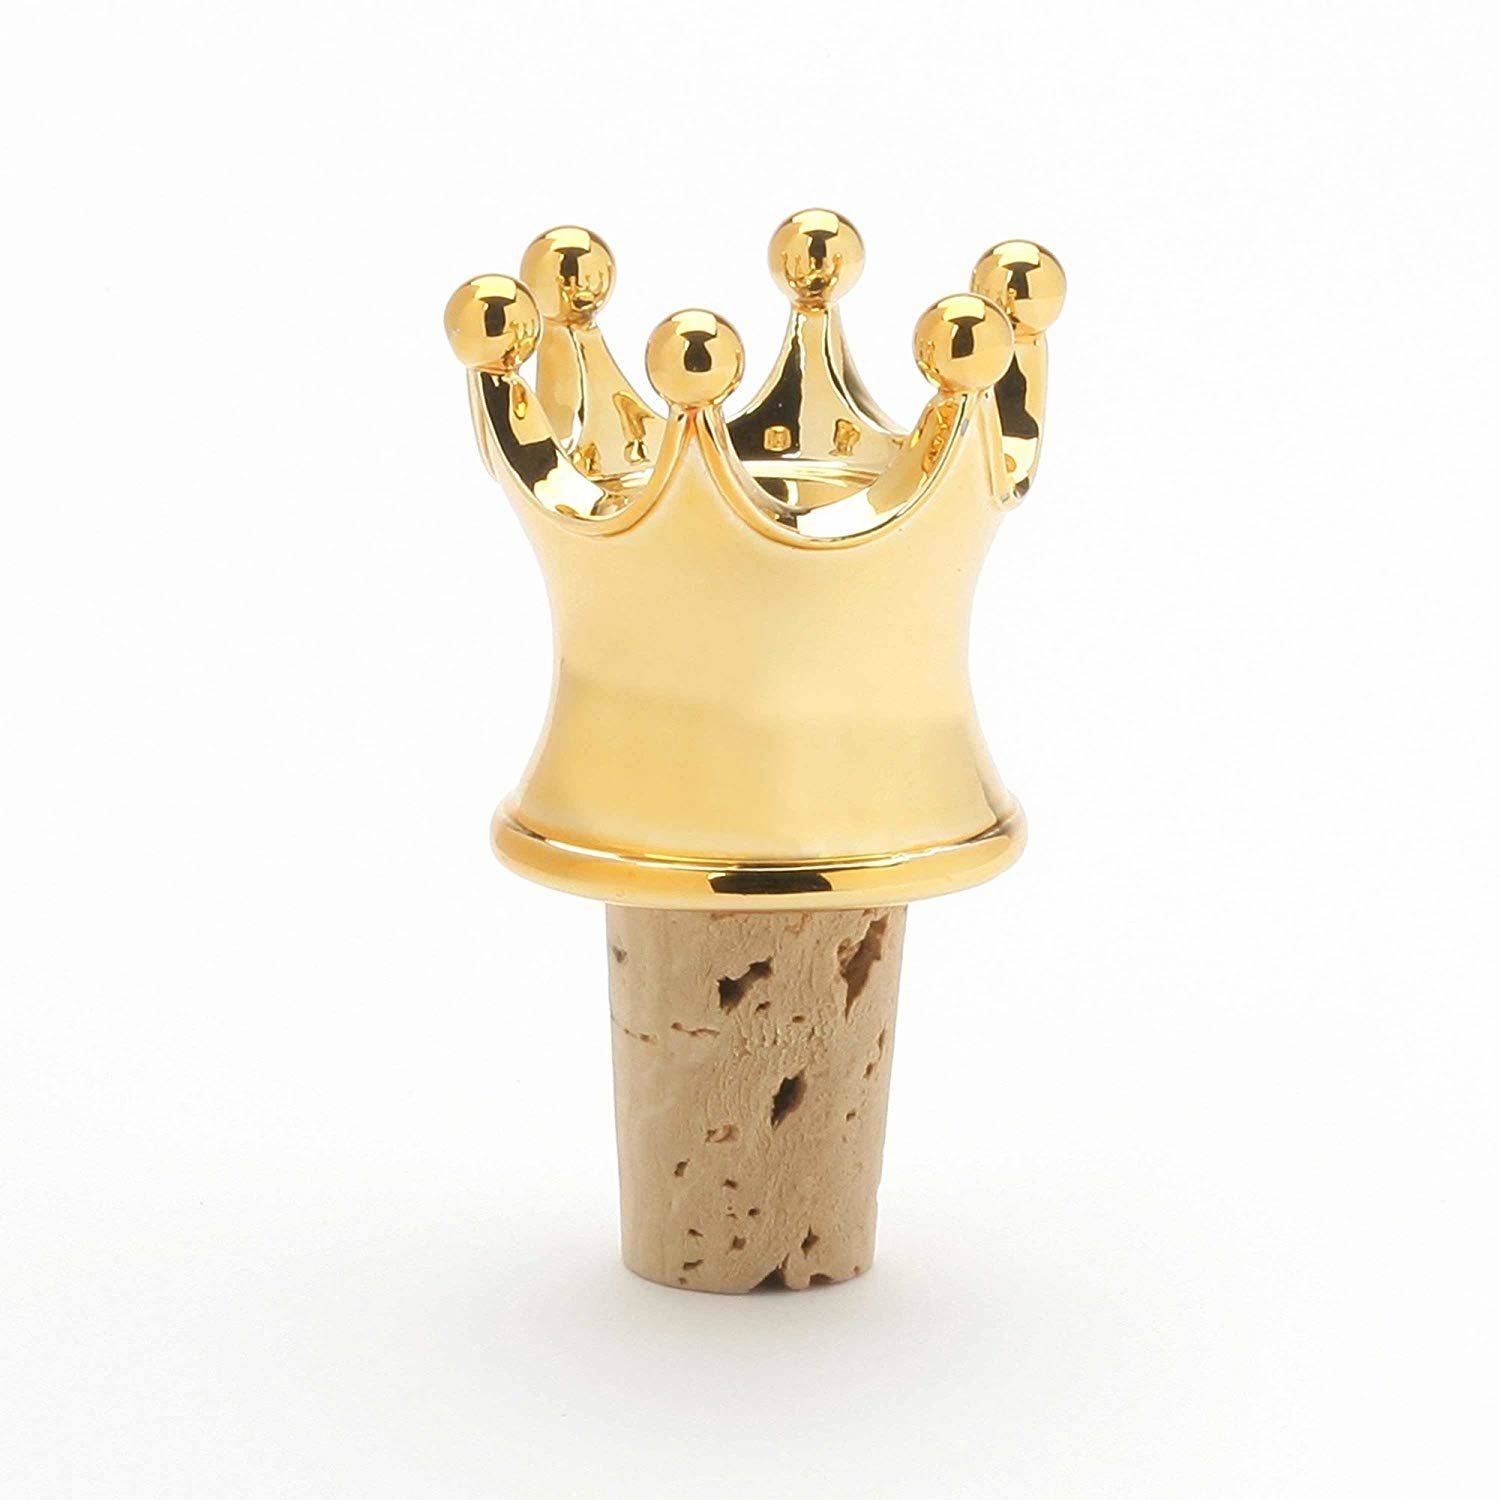 Bottle Wine Stopper - Enesco - Gold Crown 1.25" New 6002231